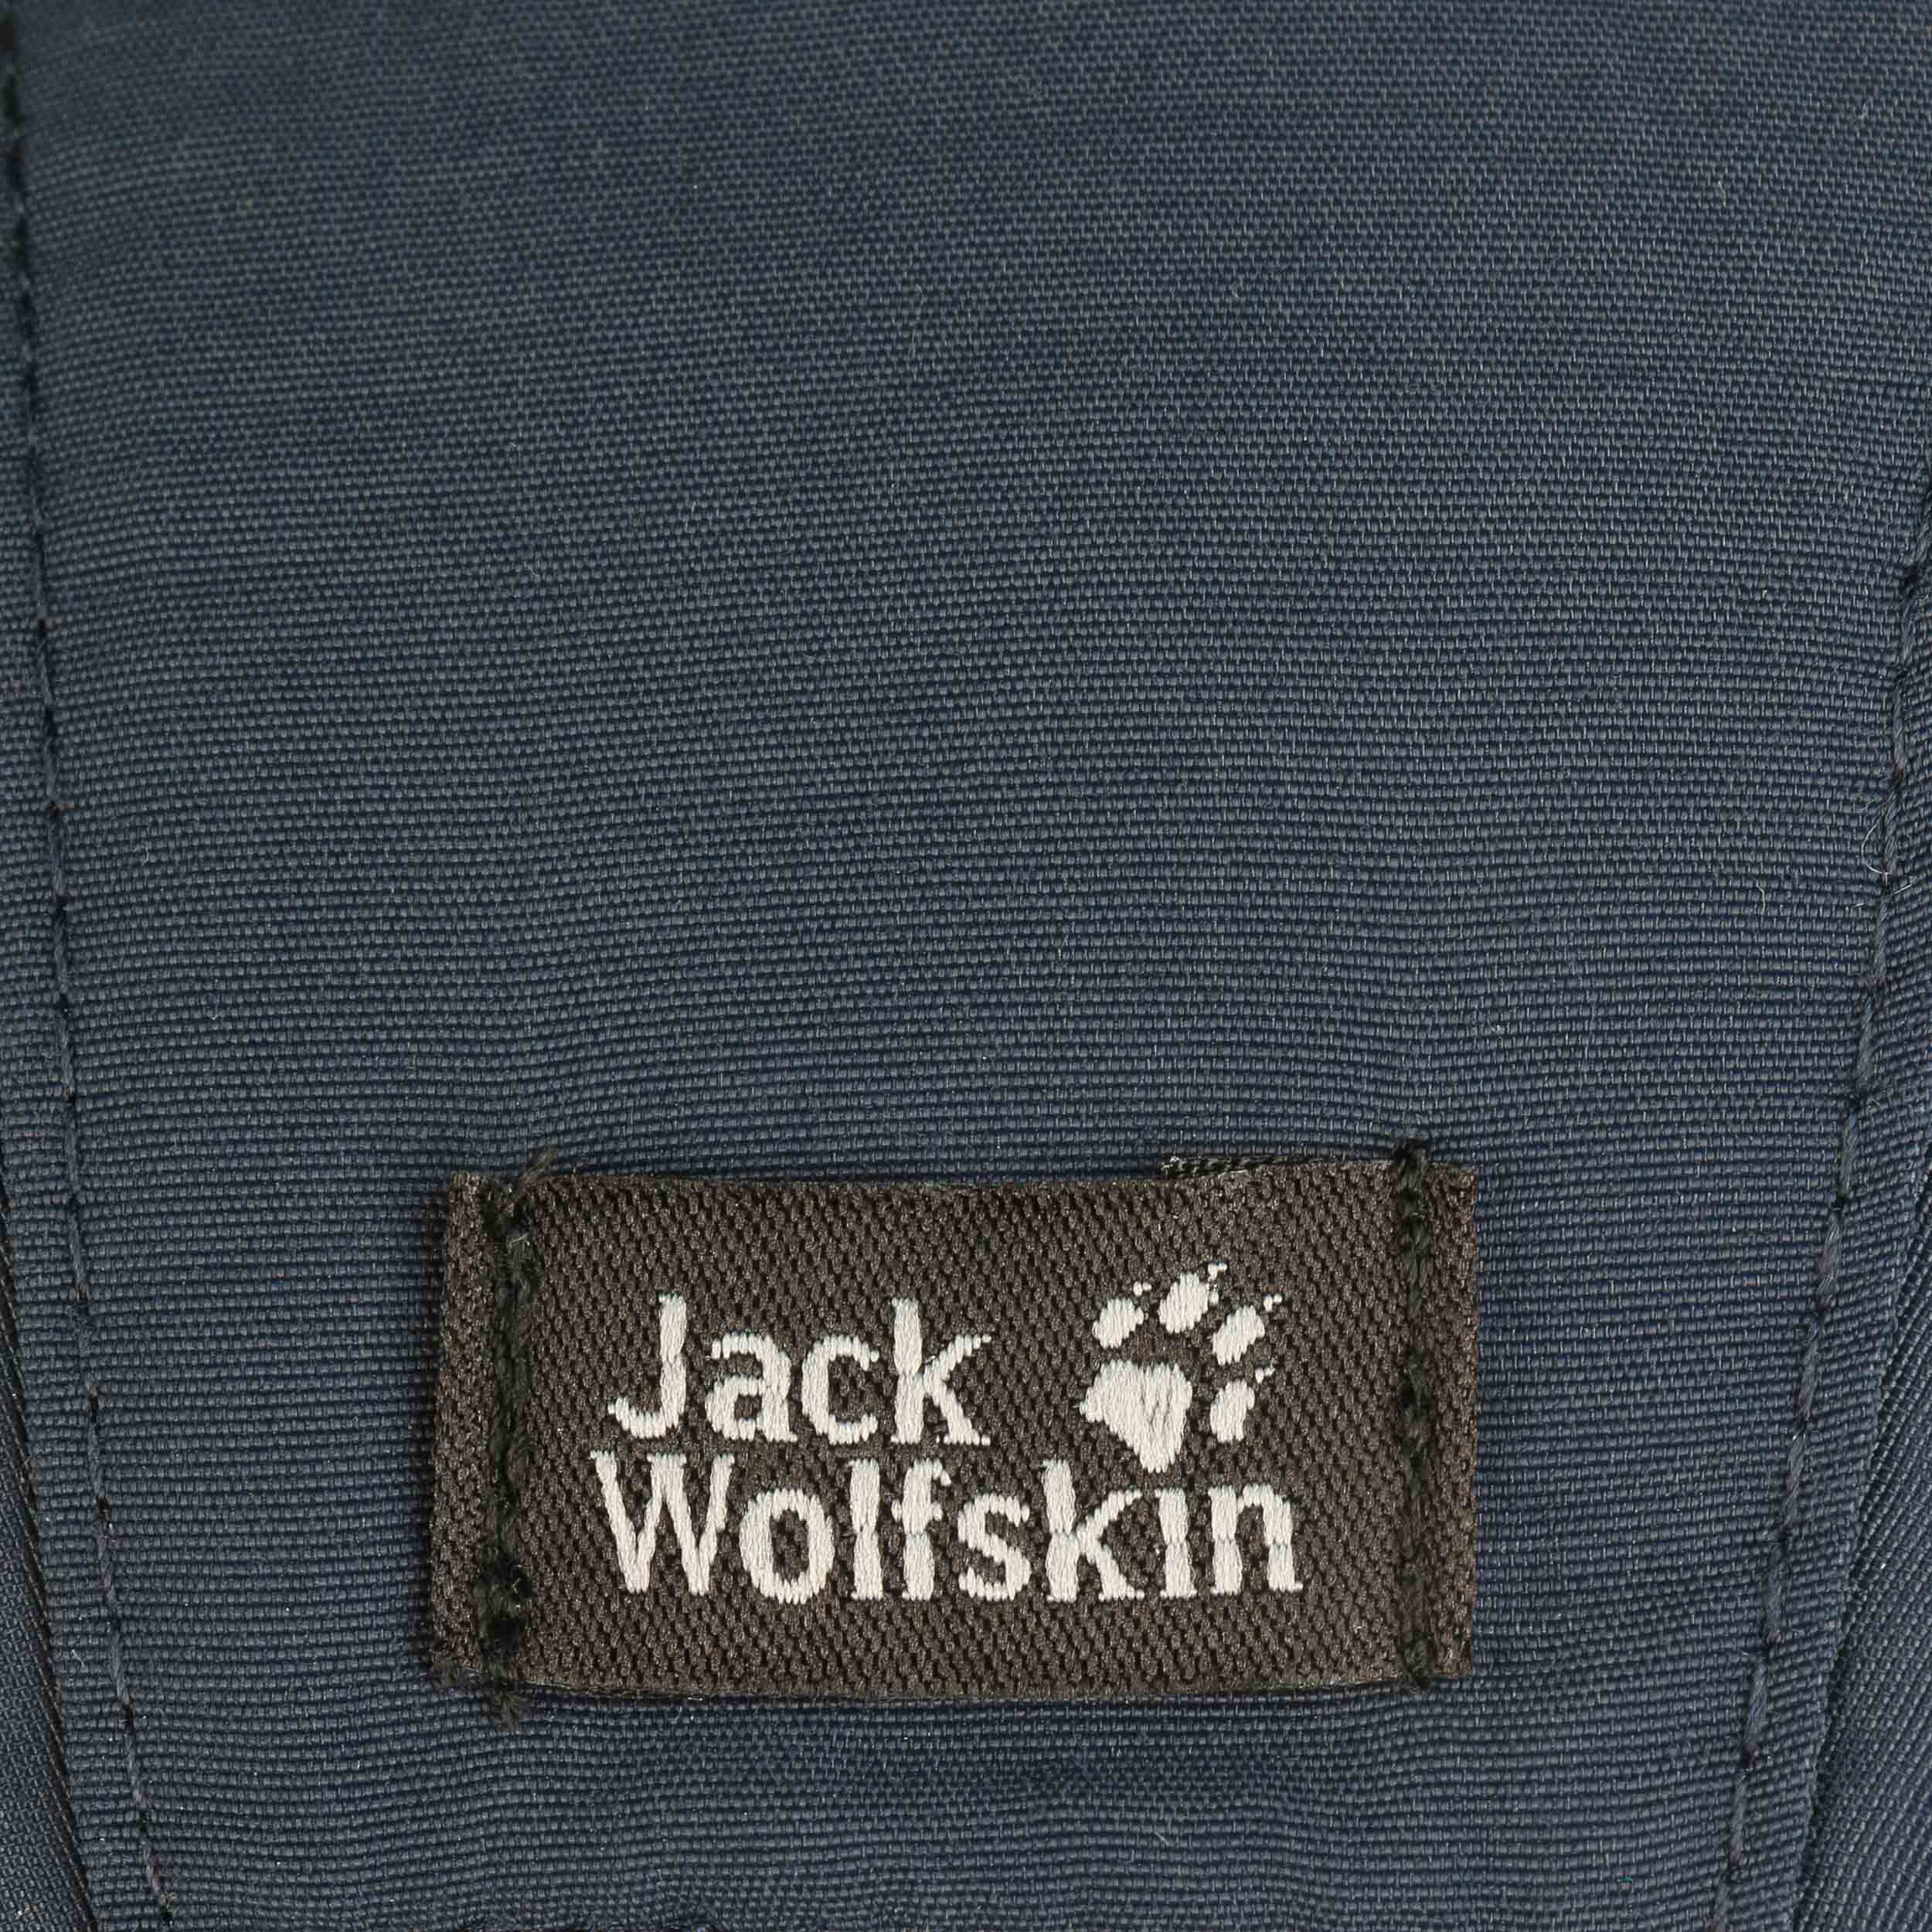 Cap Jack 32,95 Wolfskin € Pro by Vent Supplex -